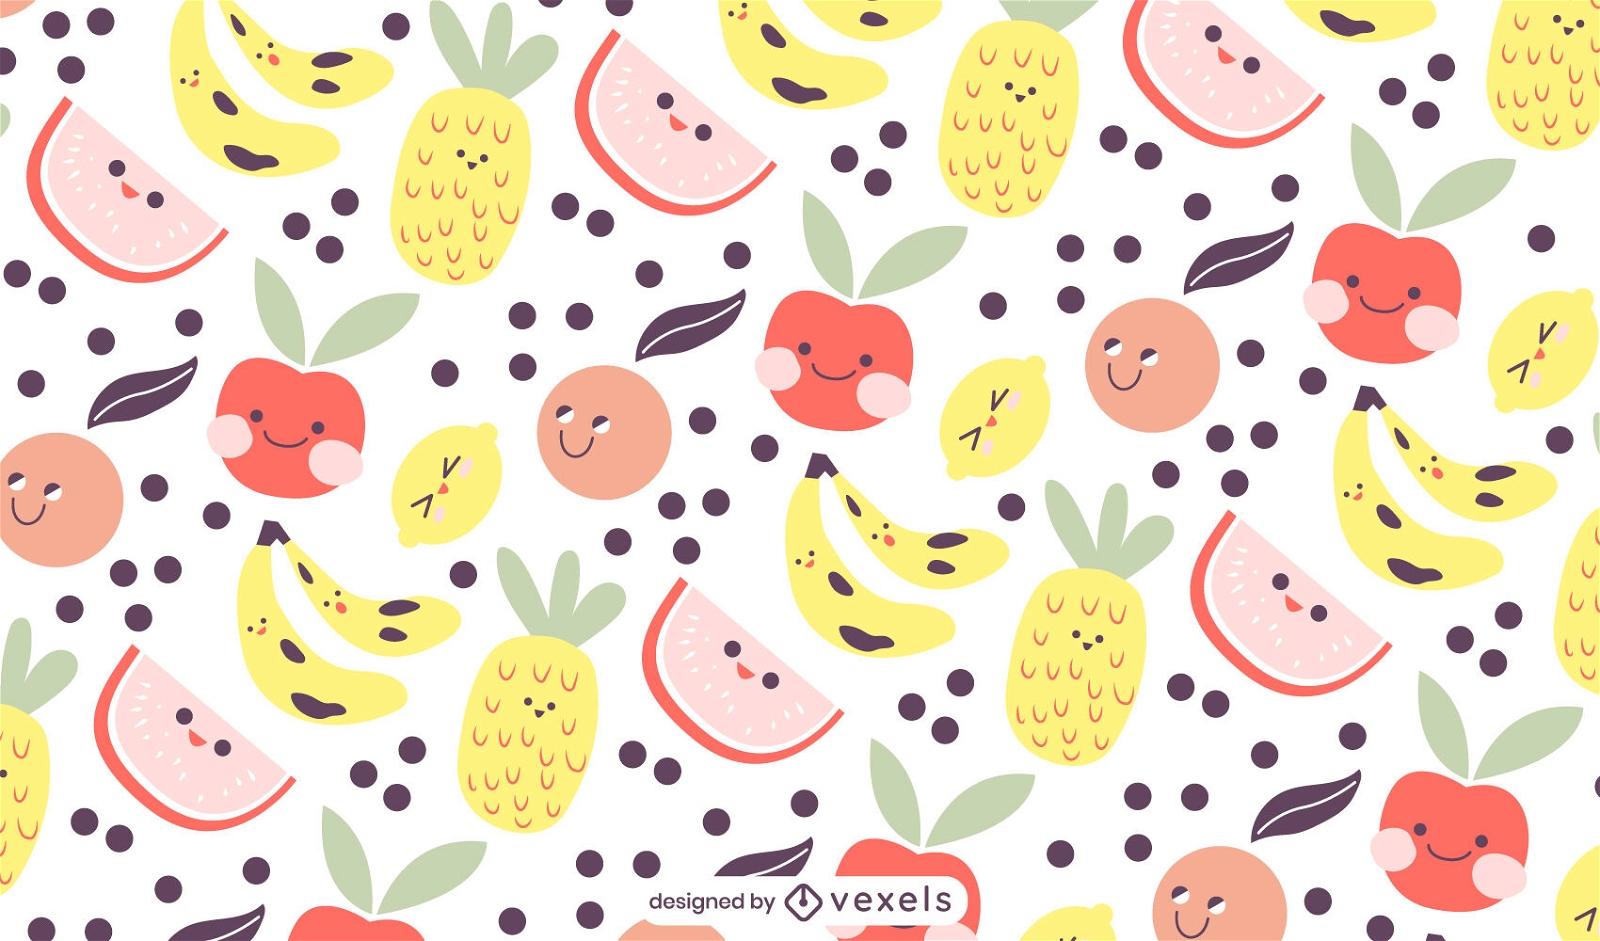 Diseño lindo del patrón de la comida sana de la fruta del bebé